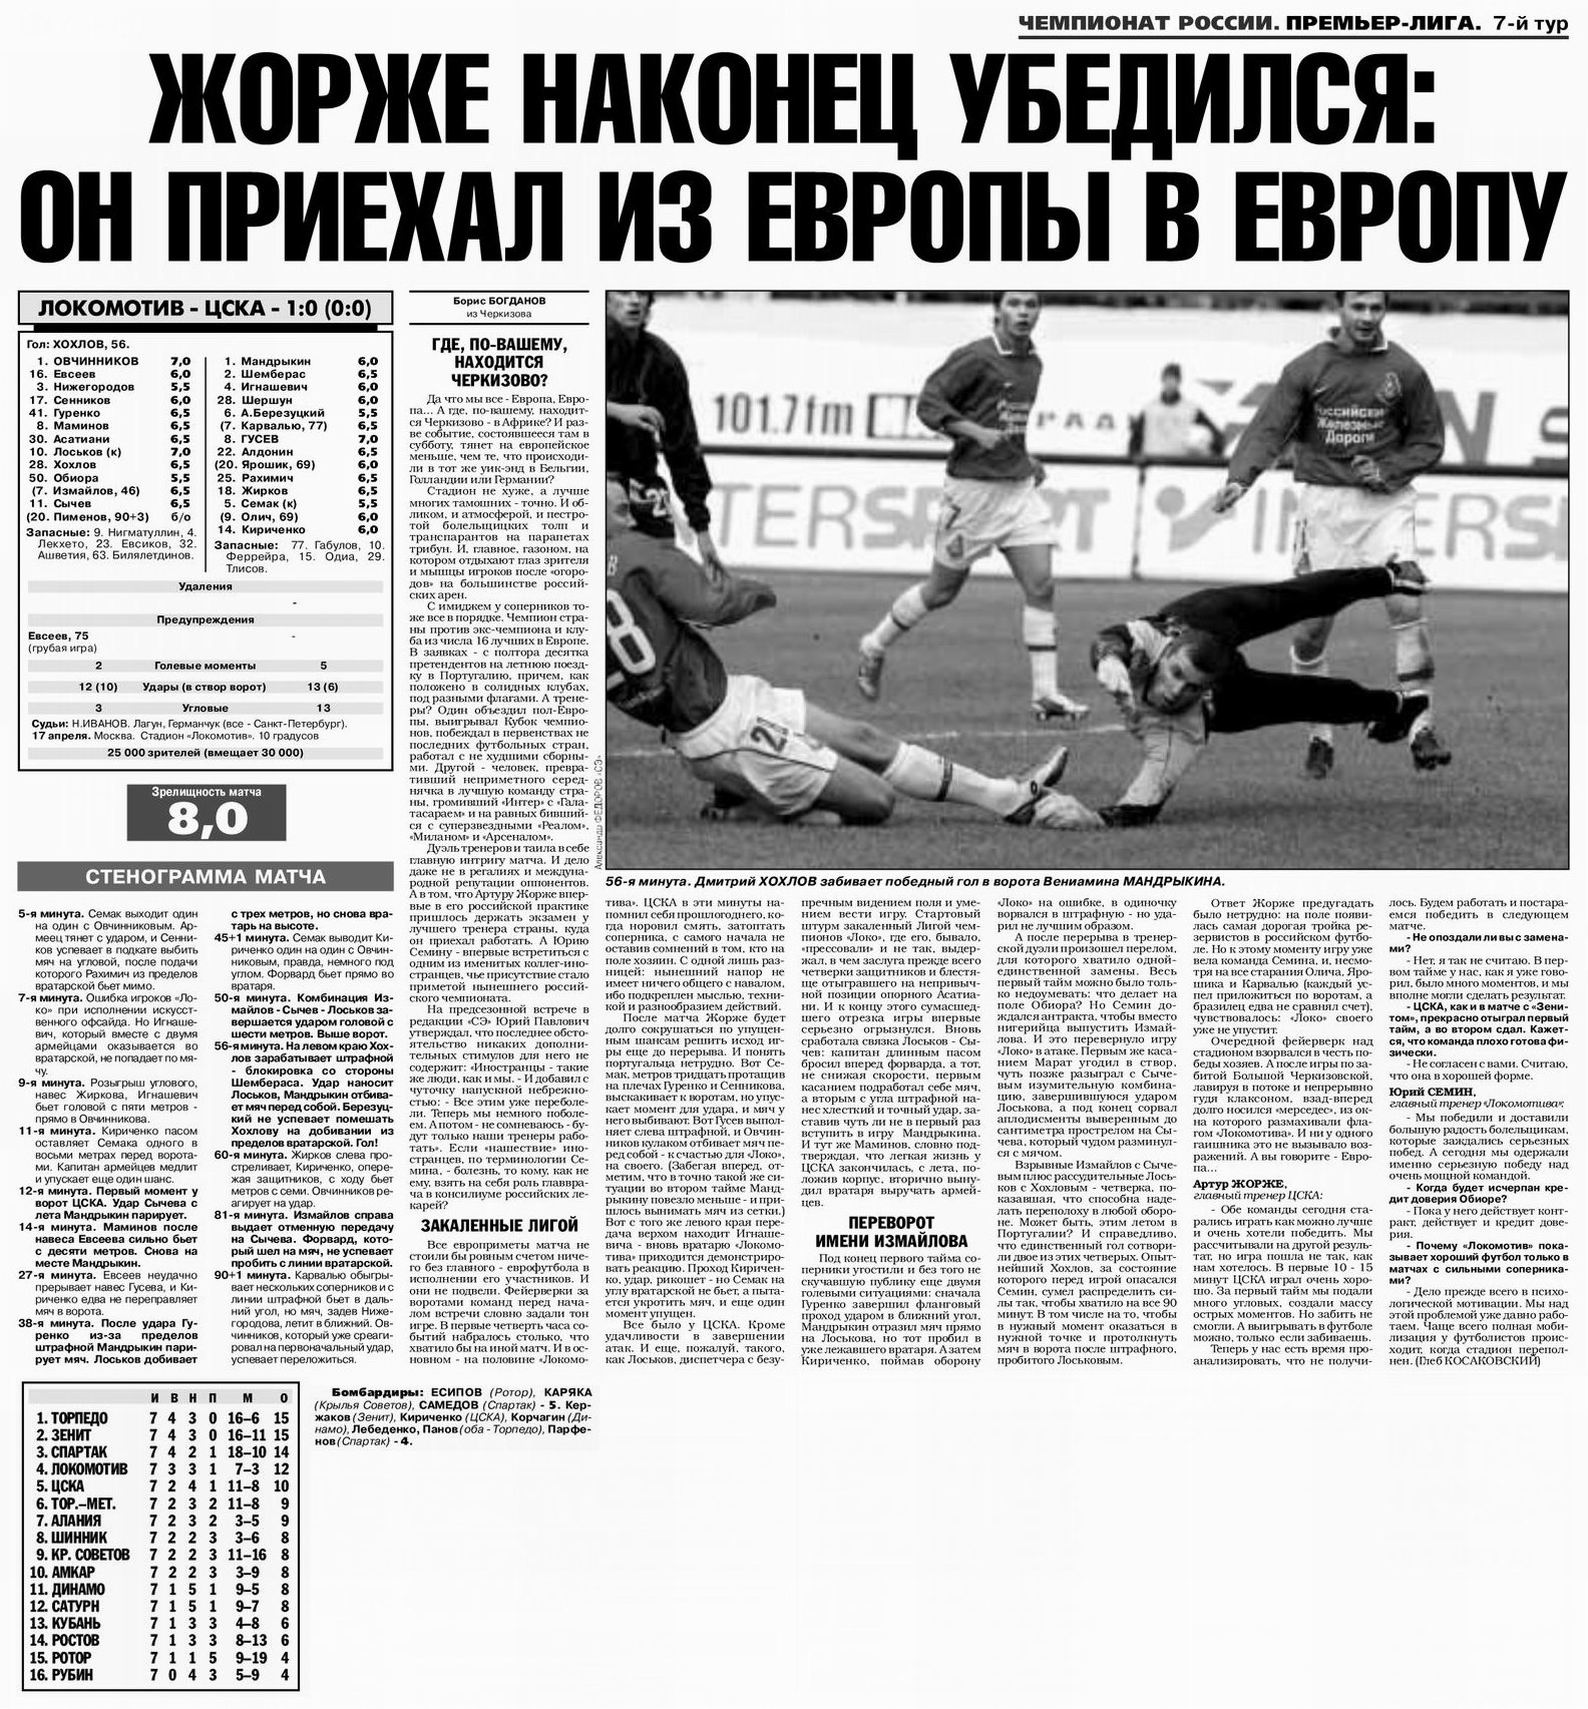 2004-04-17.LokomotivM-CSKA.1